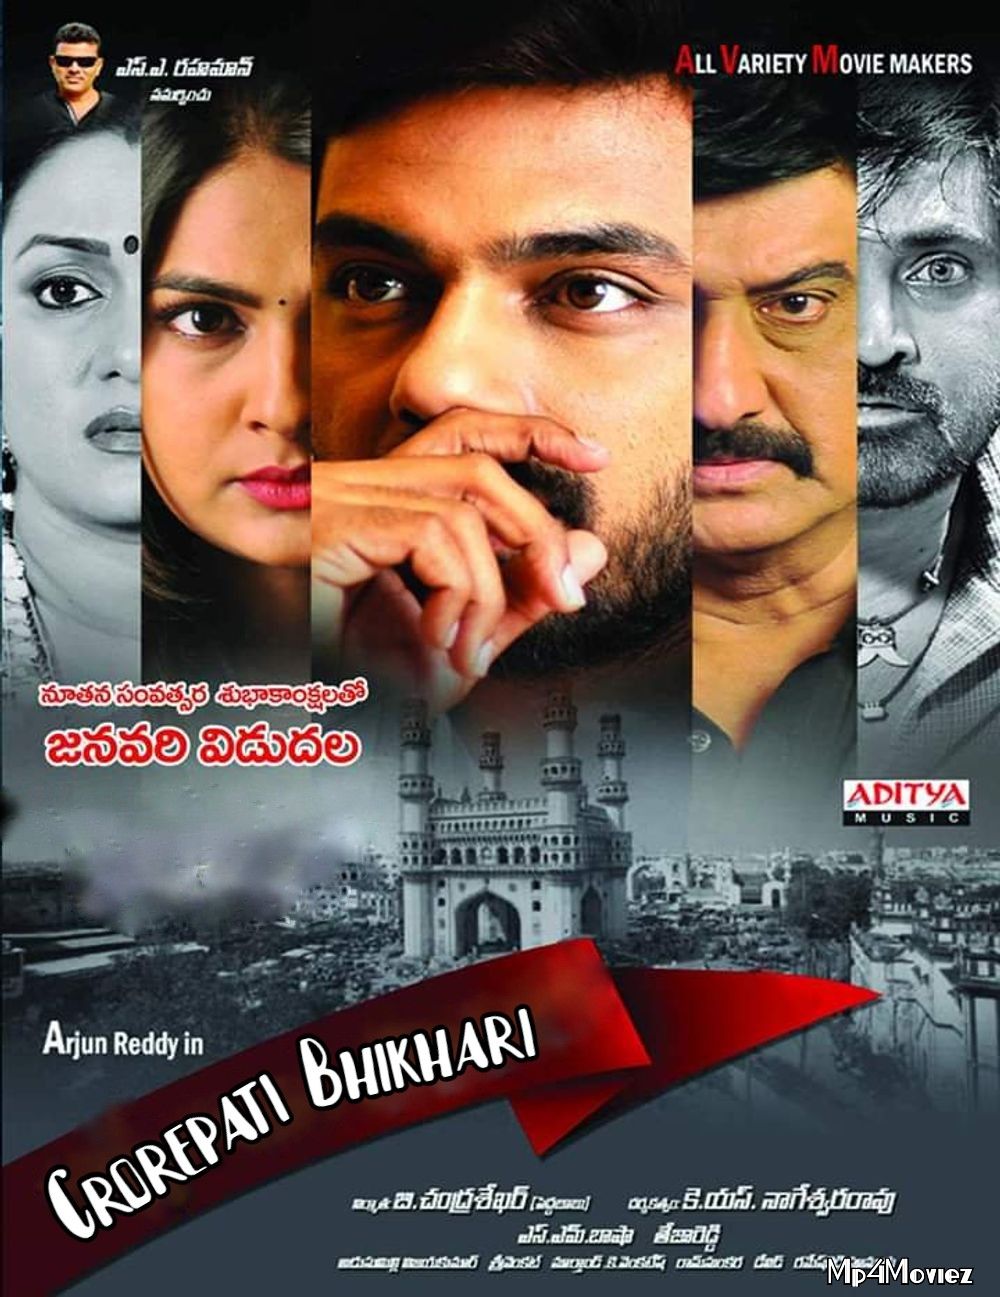 Crorepati Bhikhari (2020) Hindi Dubbed Movie download full movie